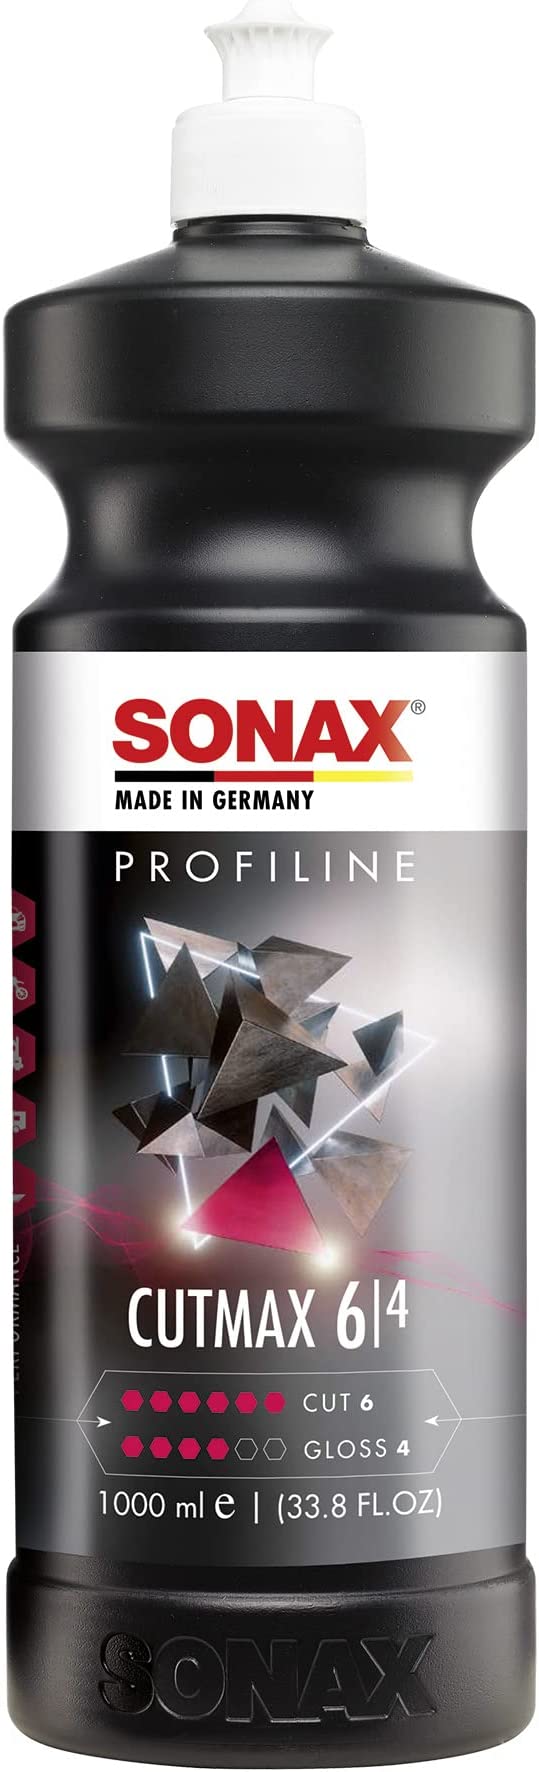 SONAX CutMax Cutting Compound